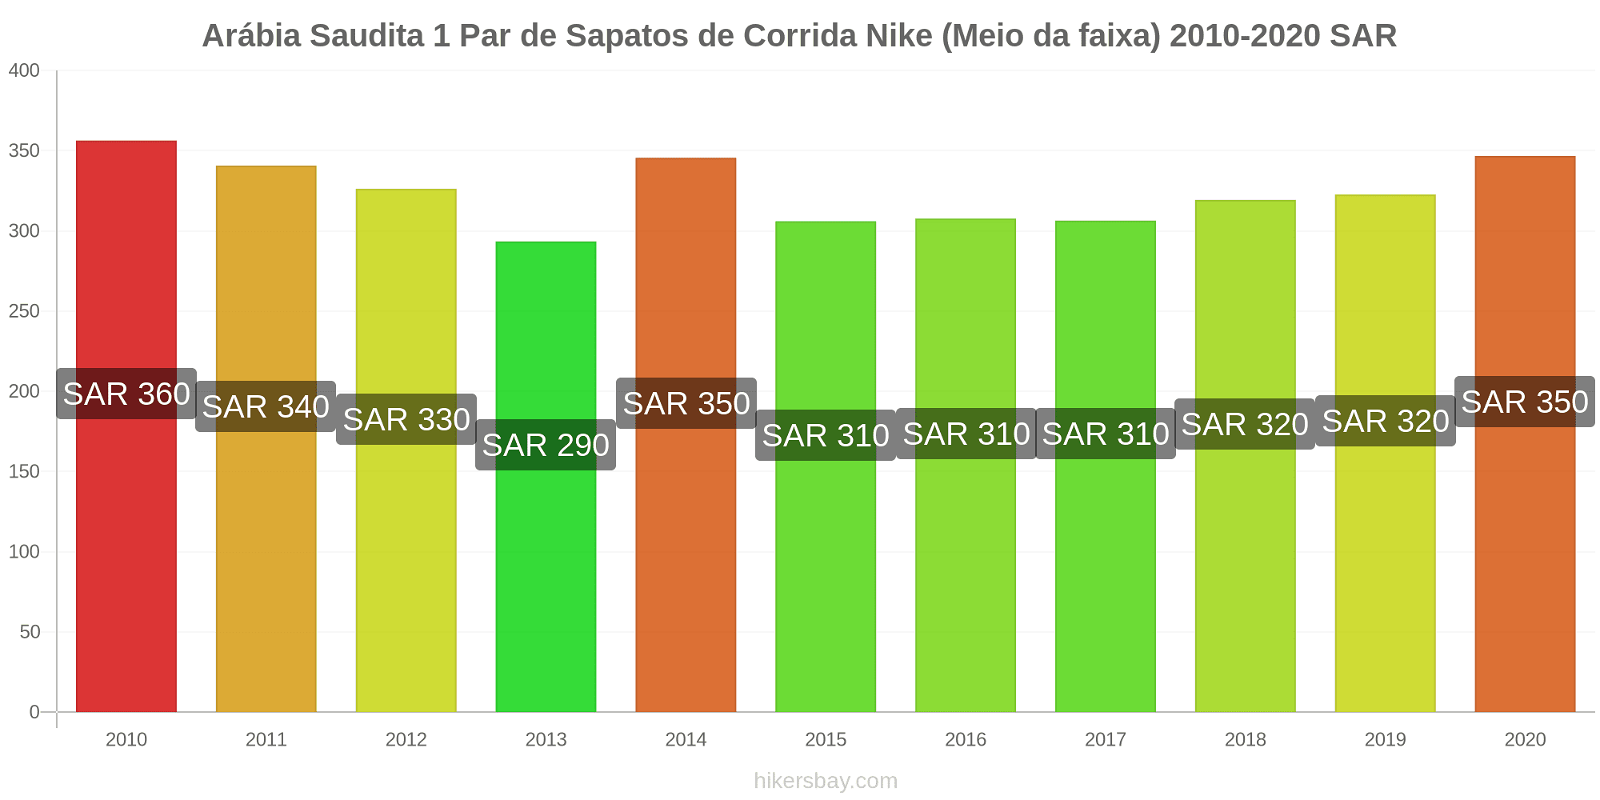 Arábia Saudita variação de preço 1 par de tênis Nike (mid-range) hikersbay.com